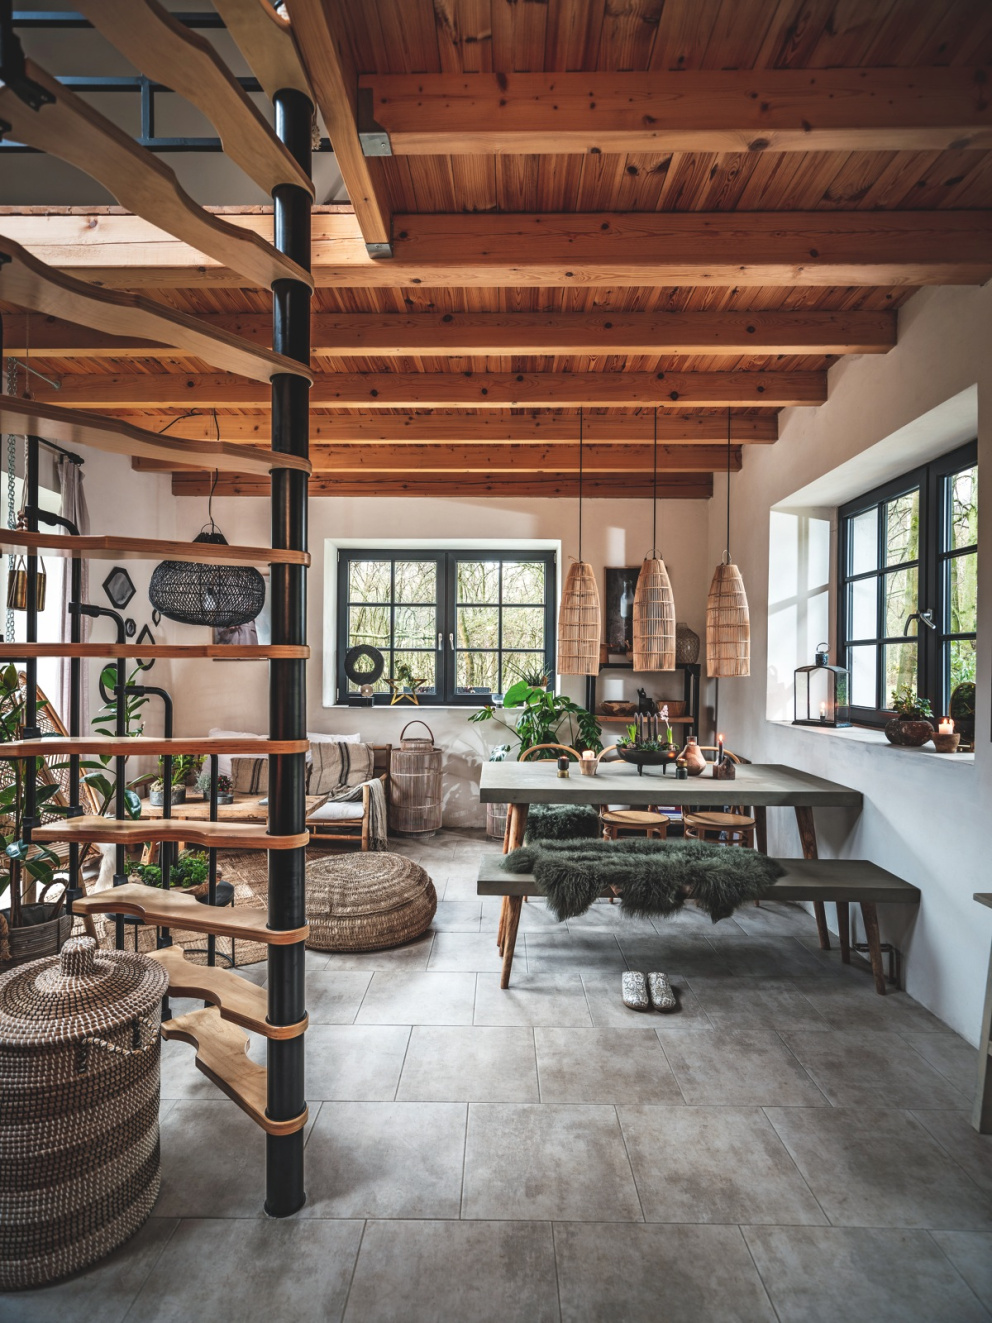 Obývací pokoj  zařízený převážně dřevěným nábytkem a doplňky z přírodních materiálů